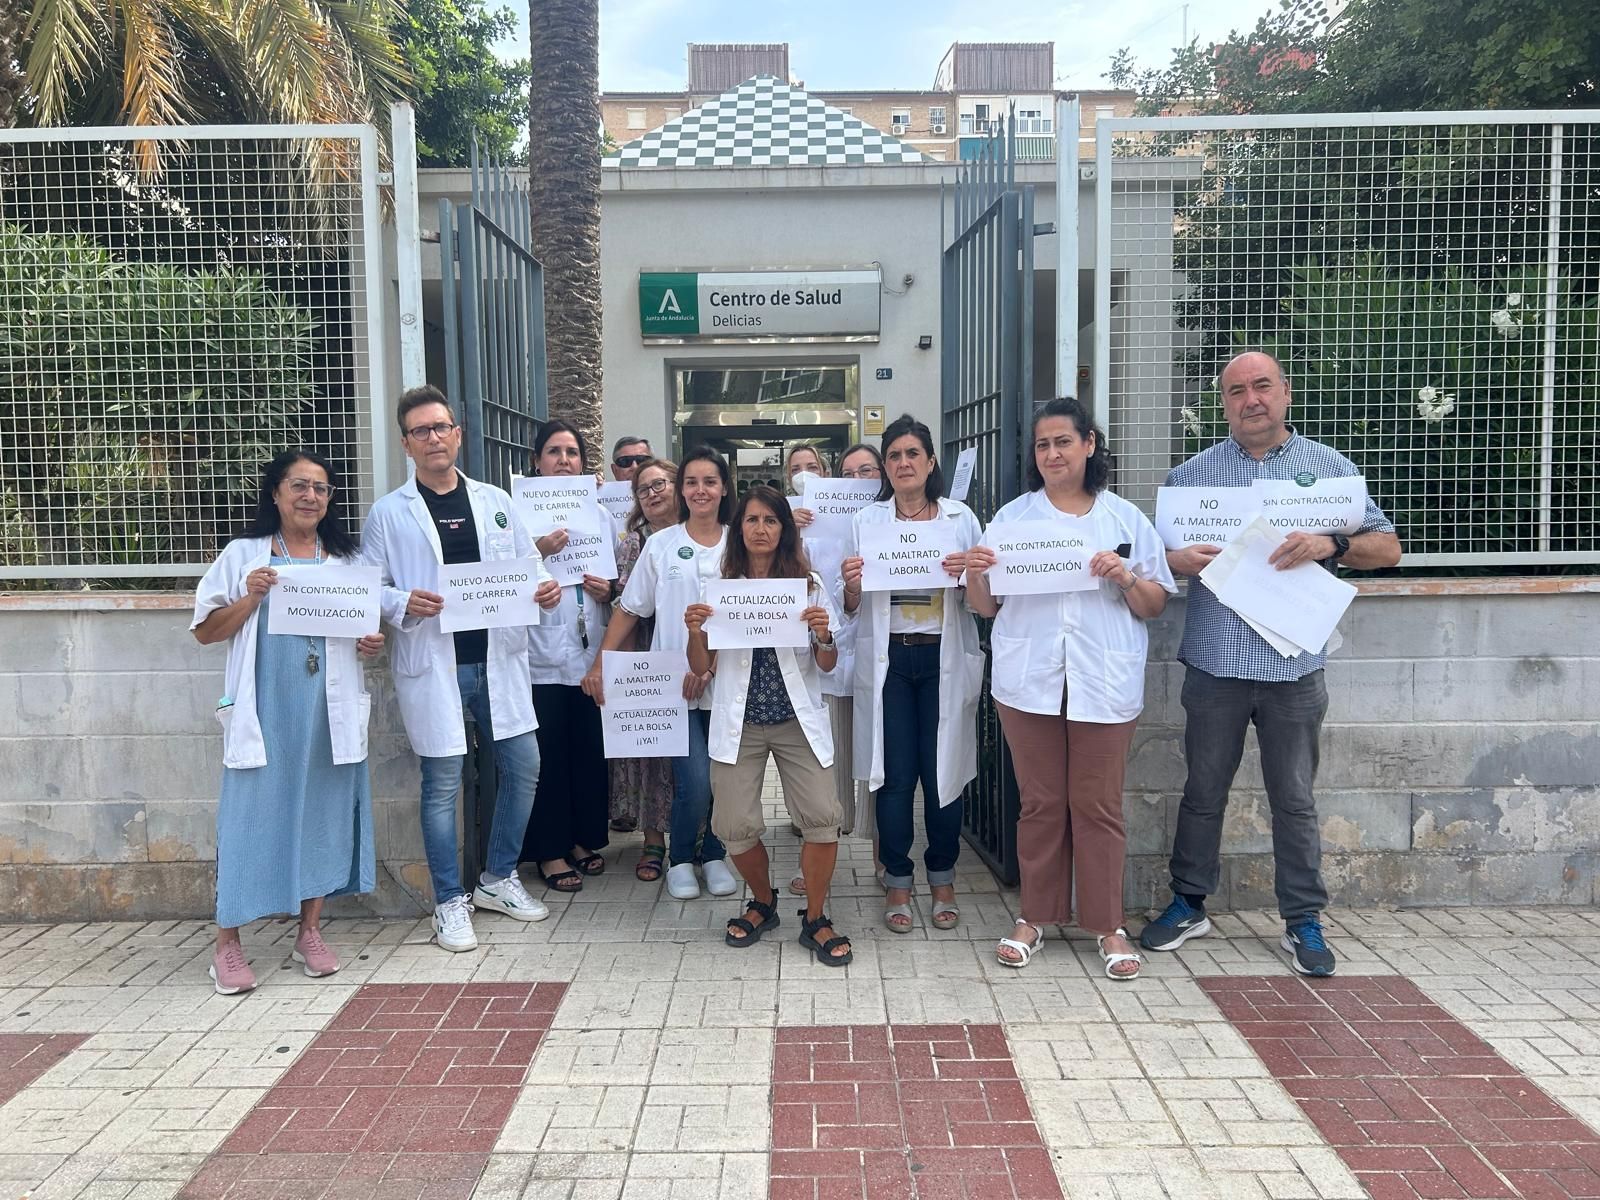 Huelga de sanitarios en los centros de salud y hospitales de Málaga